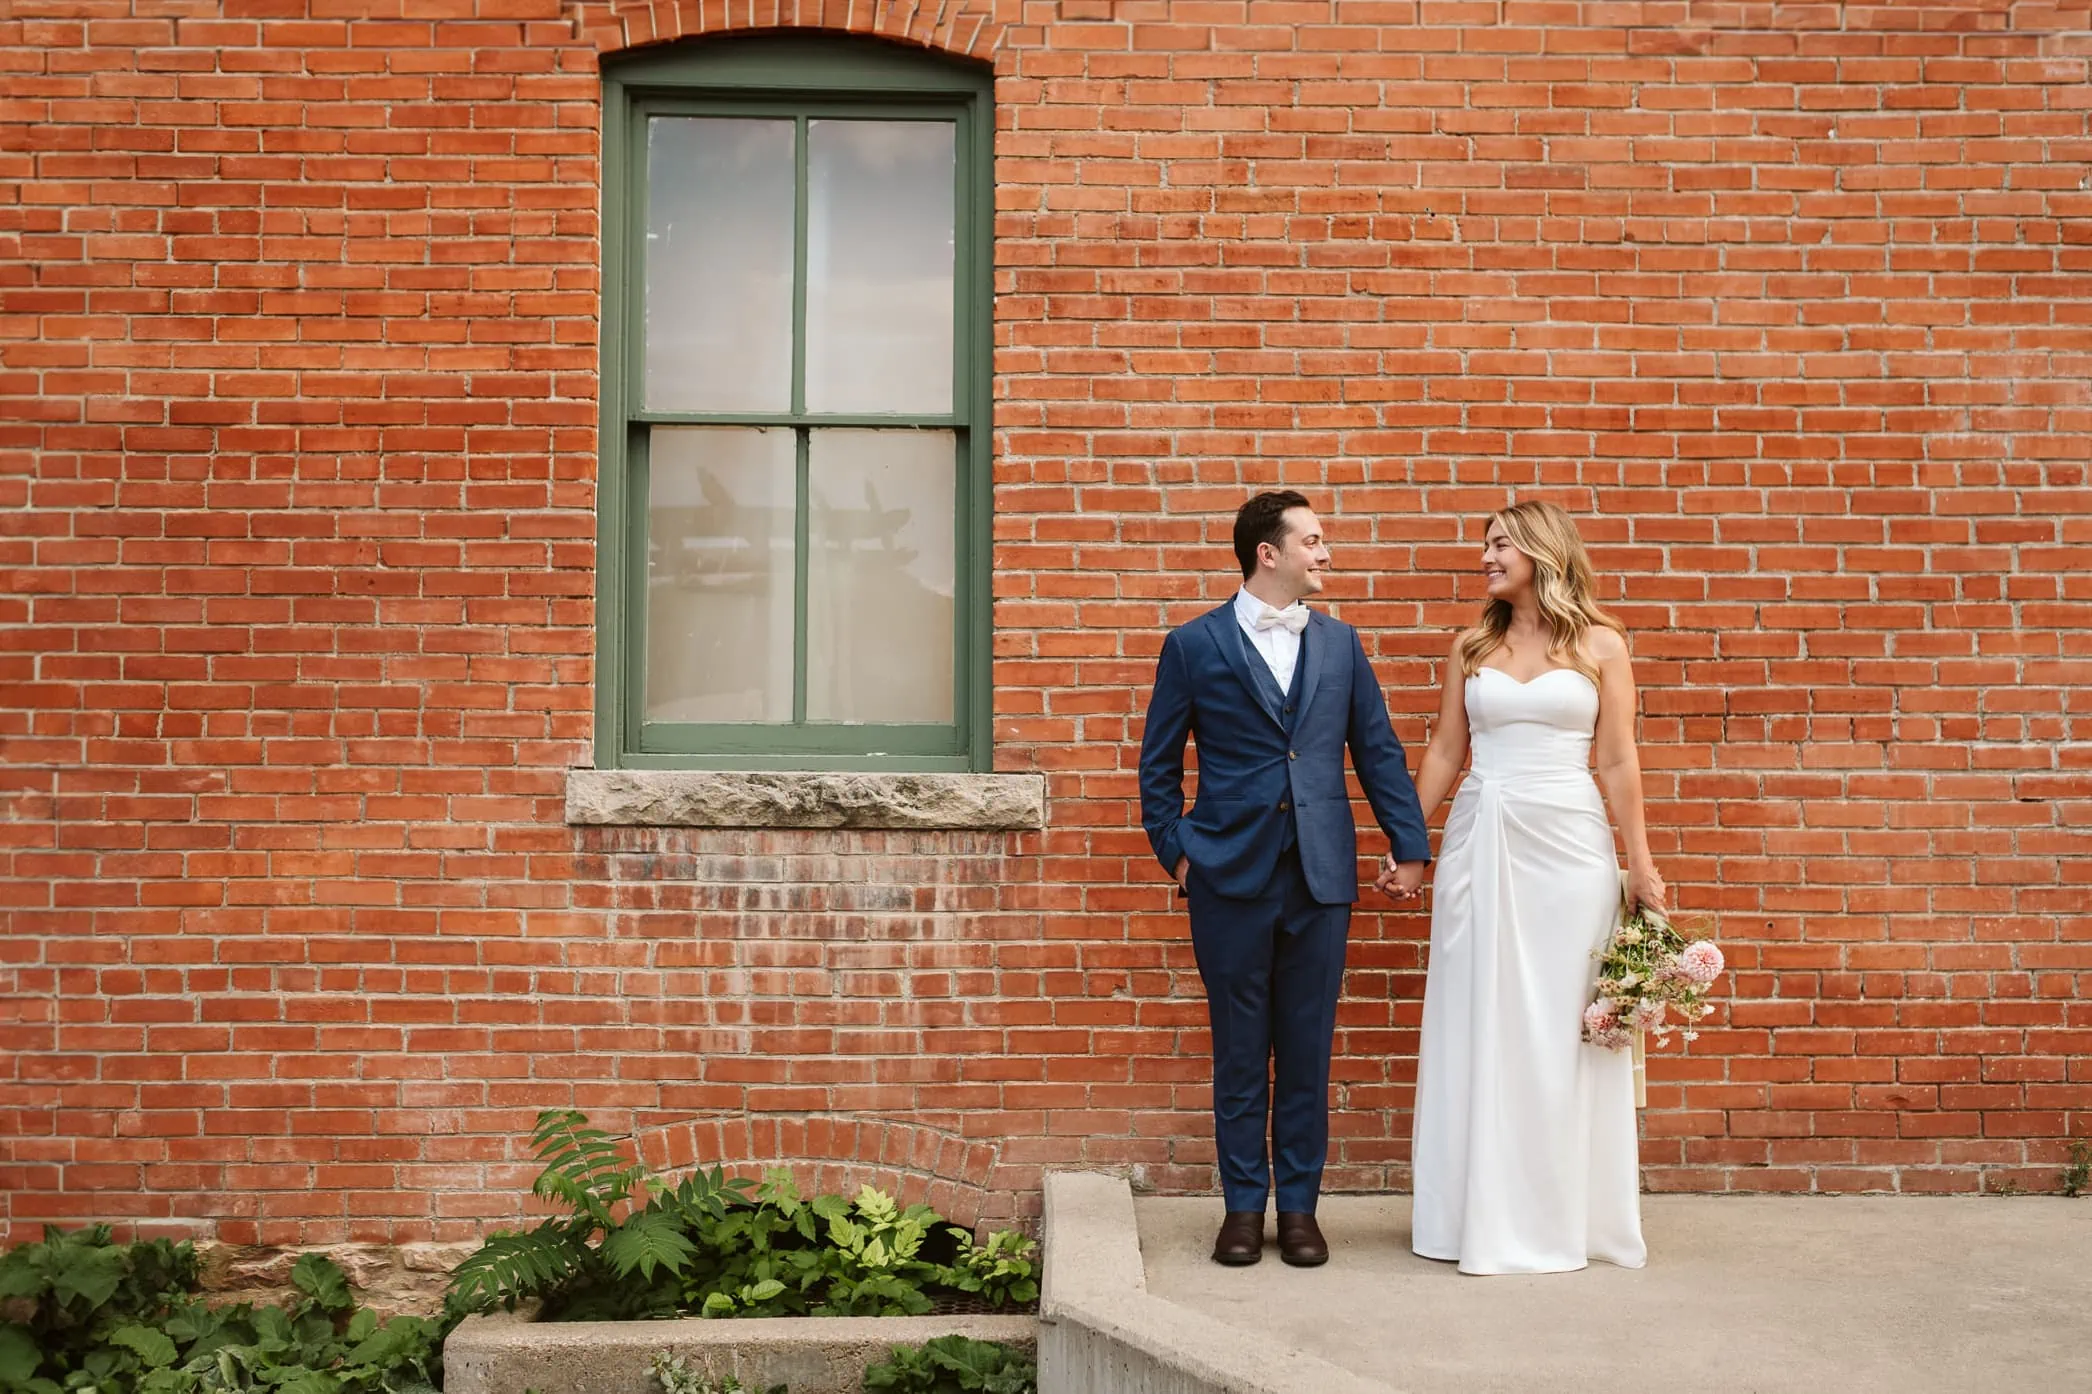 A European-Inspired Summer Wedding in Colorado